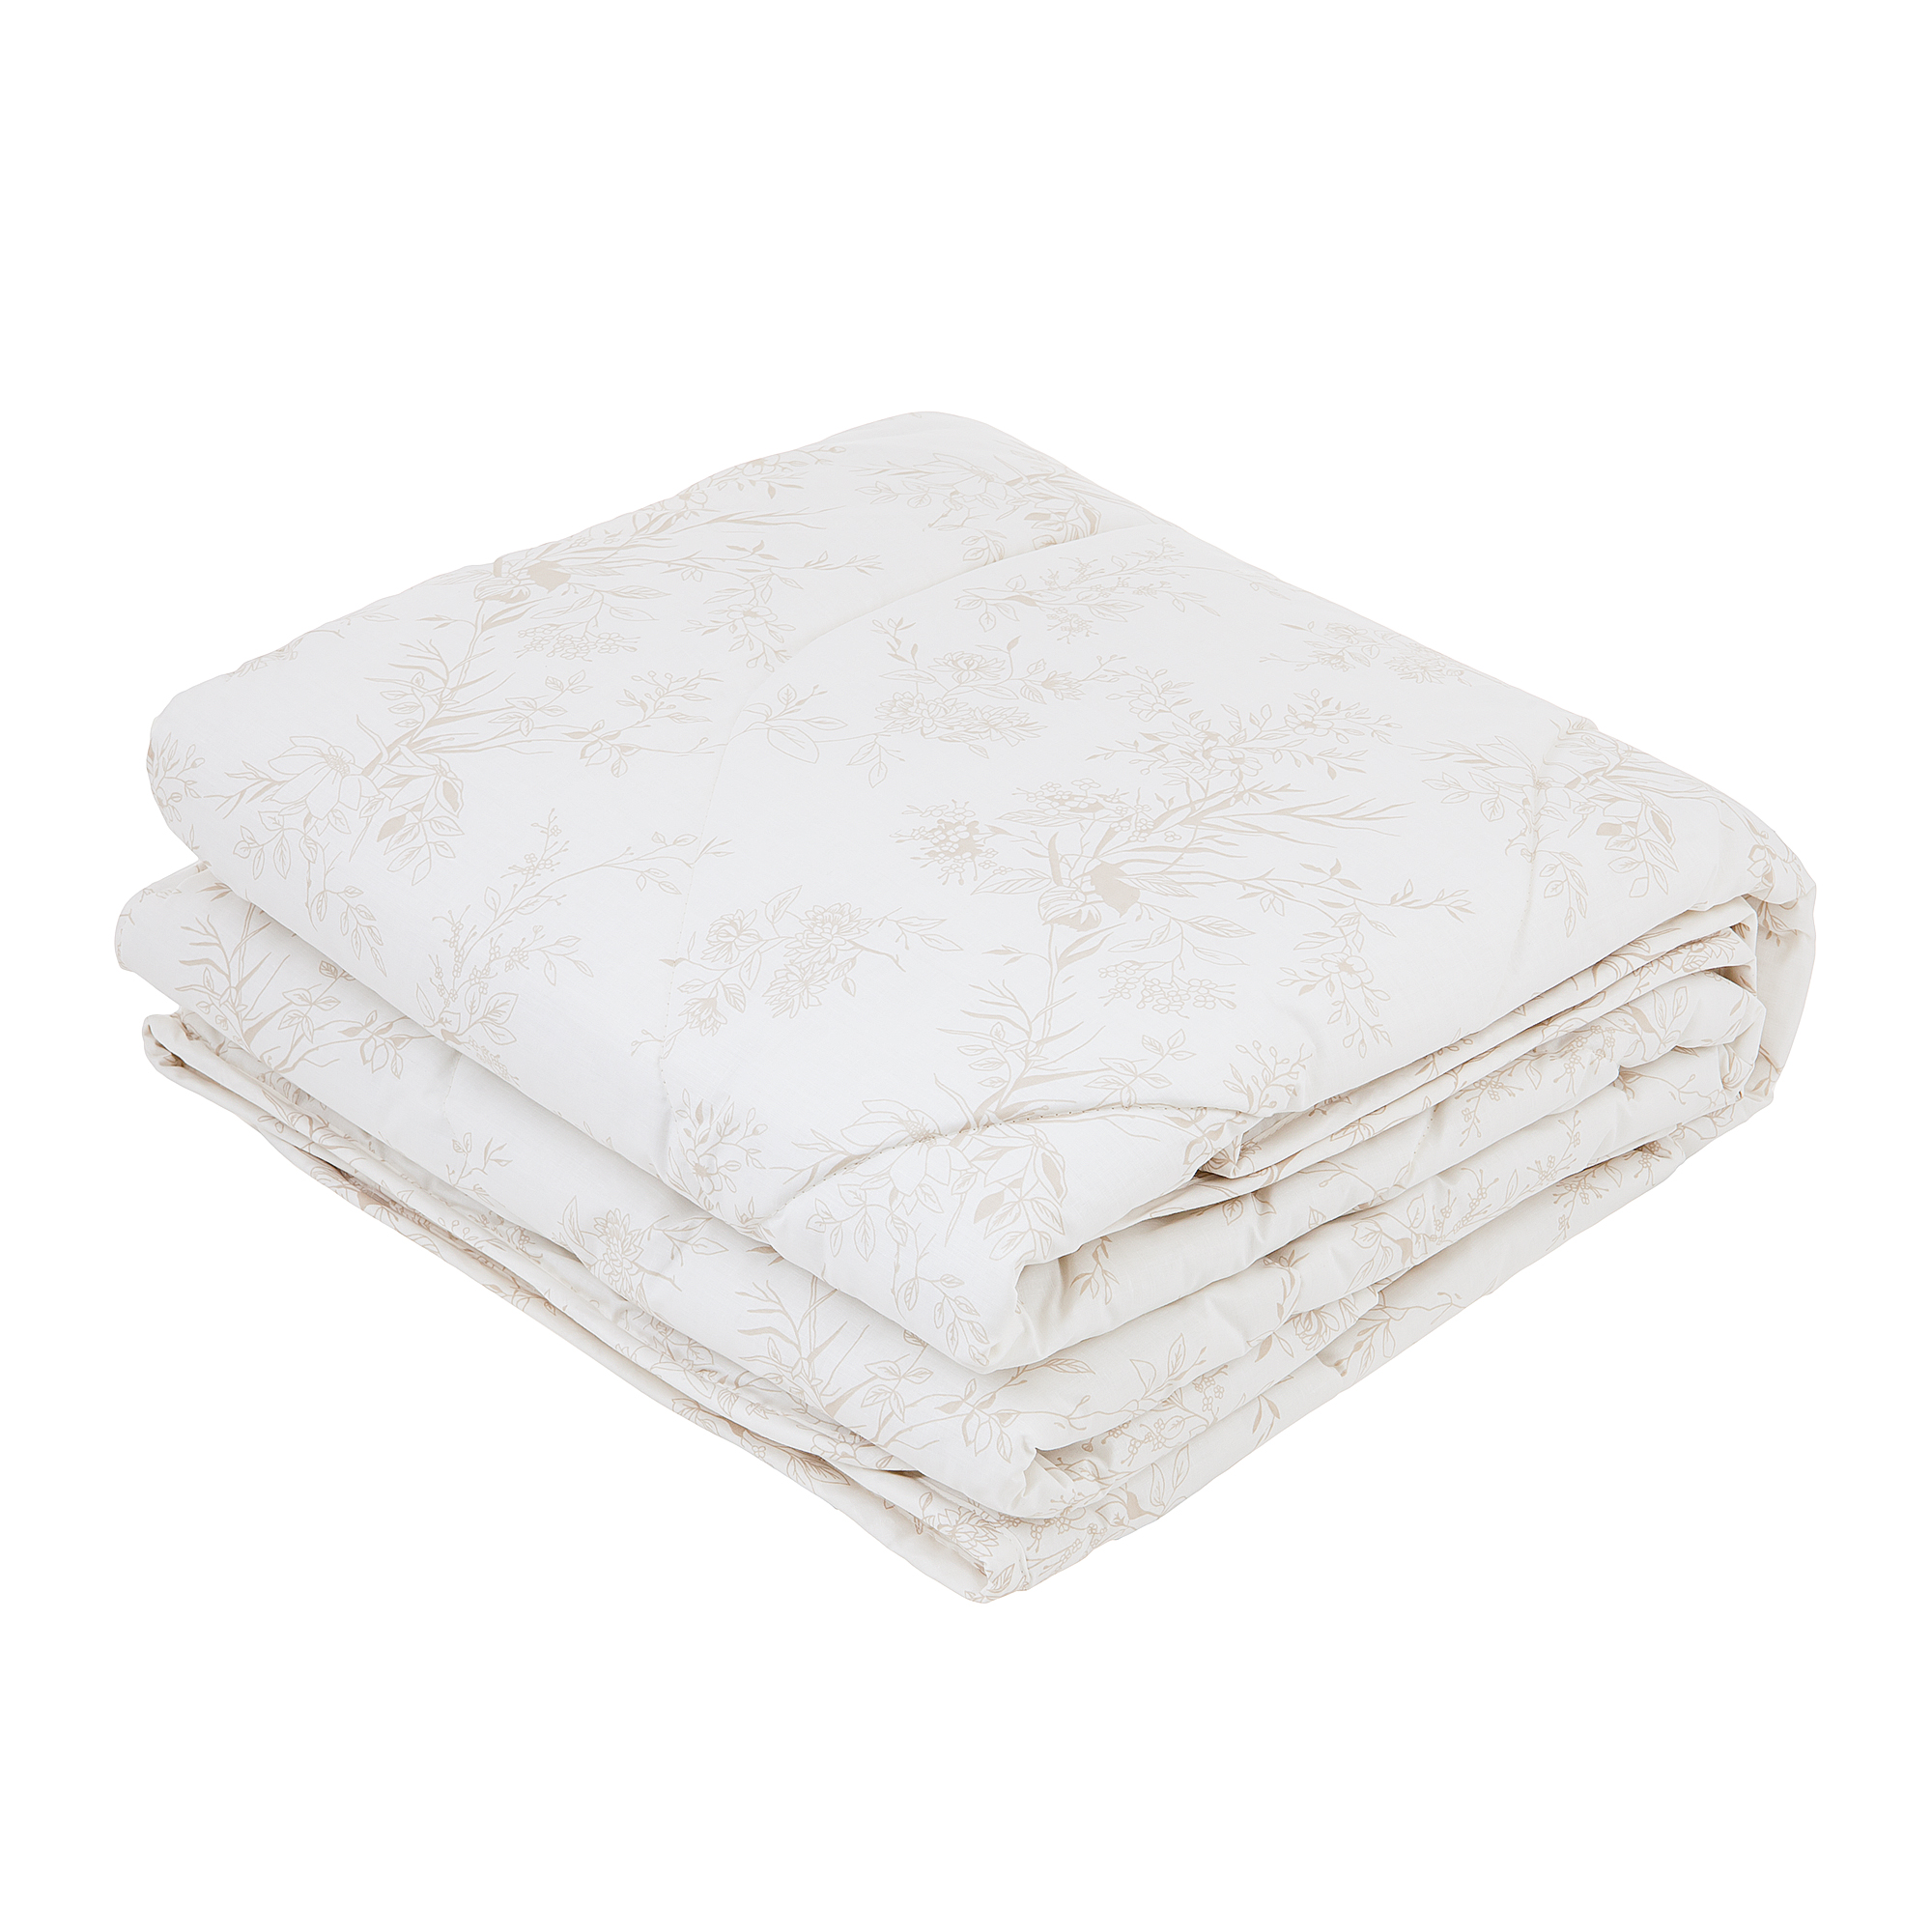 Одеяло Classic by T Хлопок-натурэль 200х210 одеяло estia силенсио 200х210 см